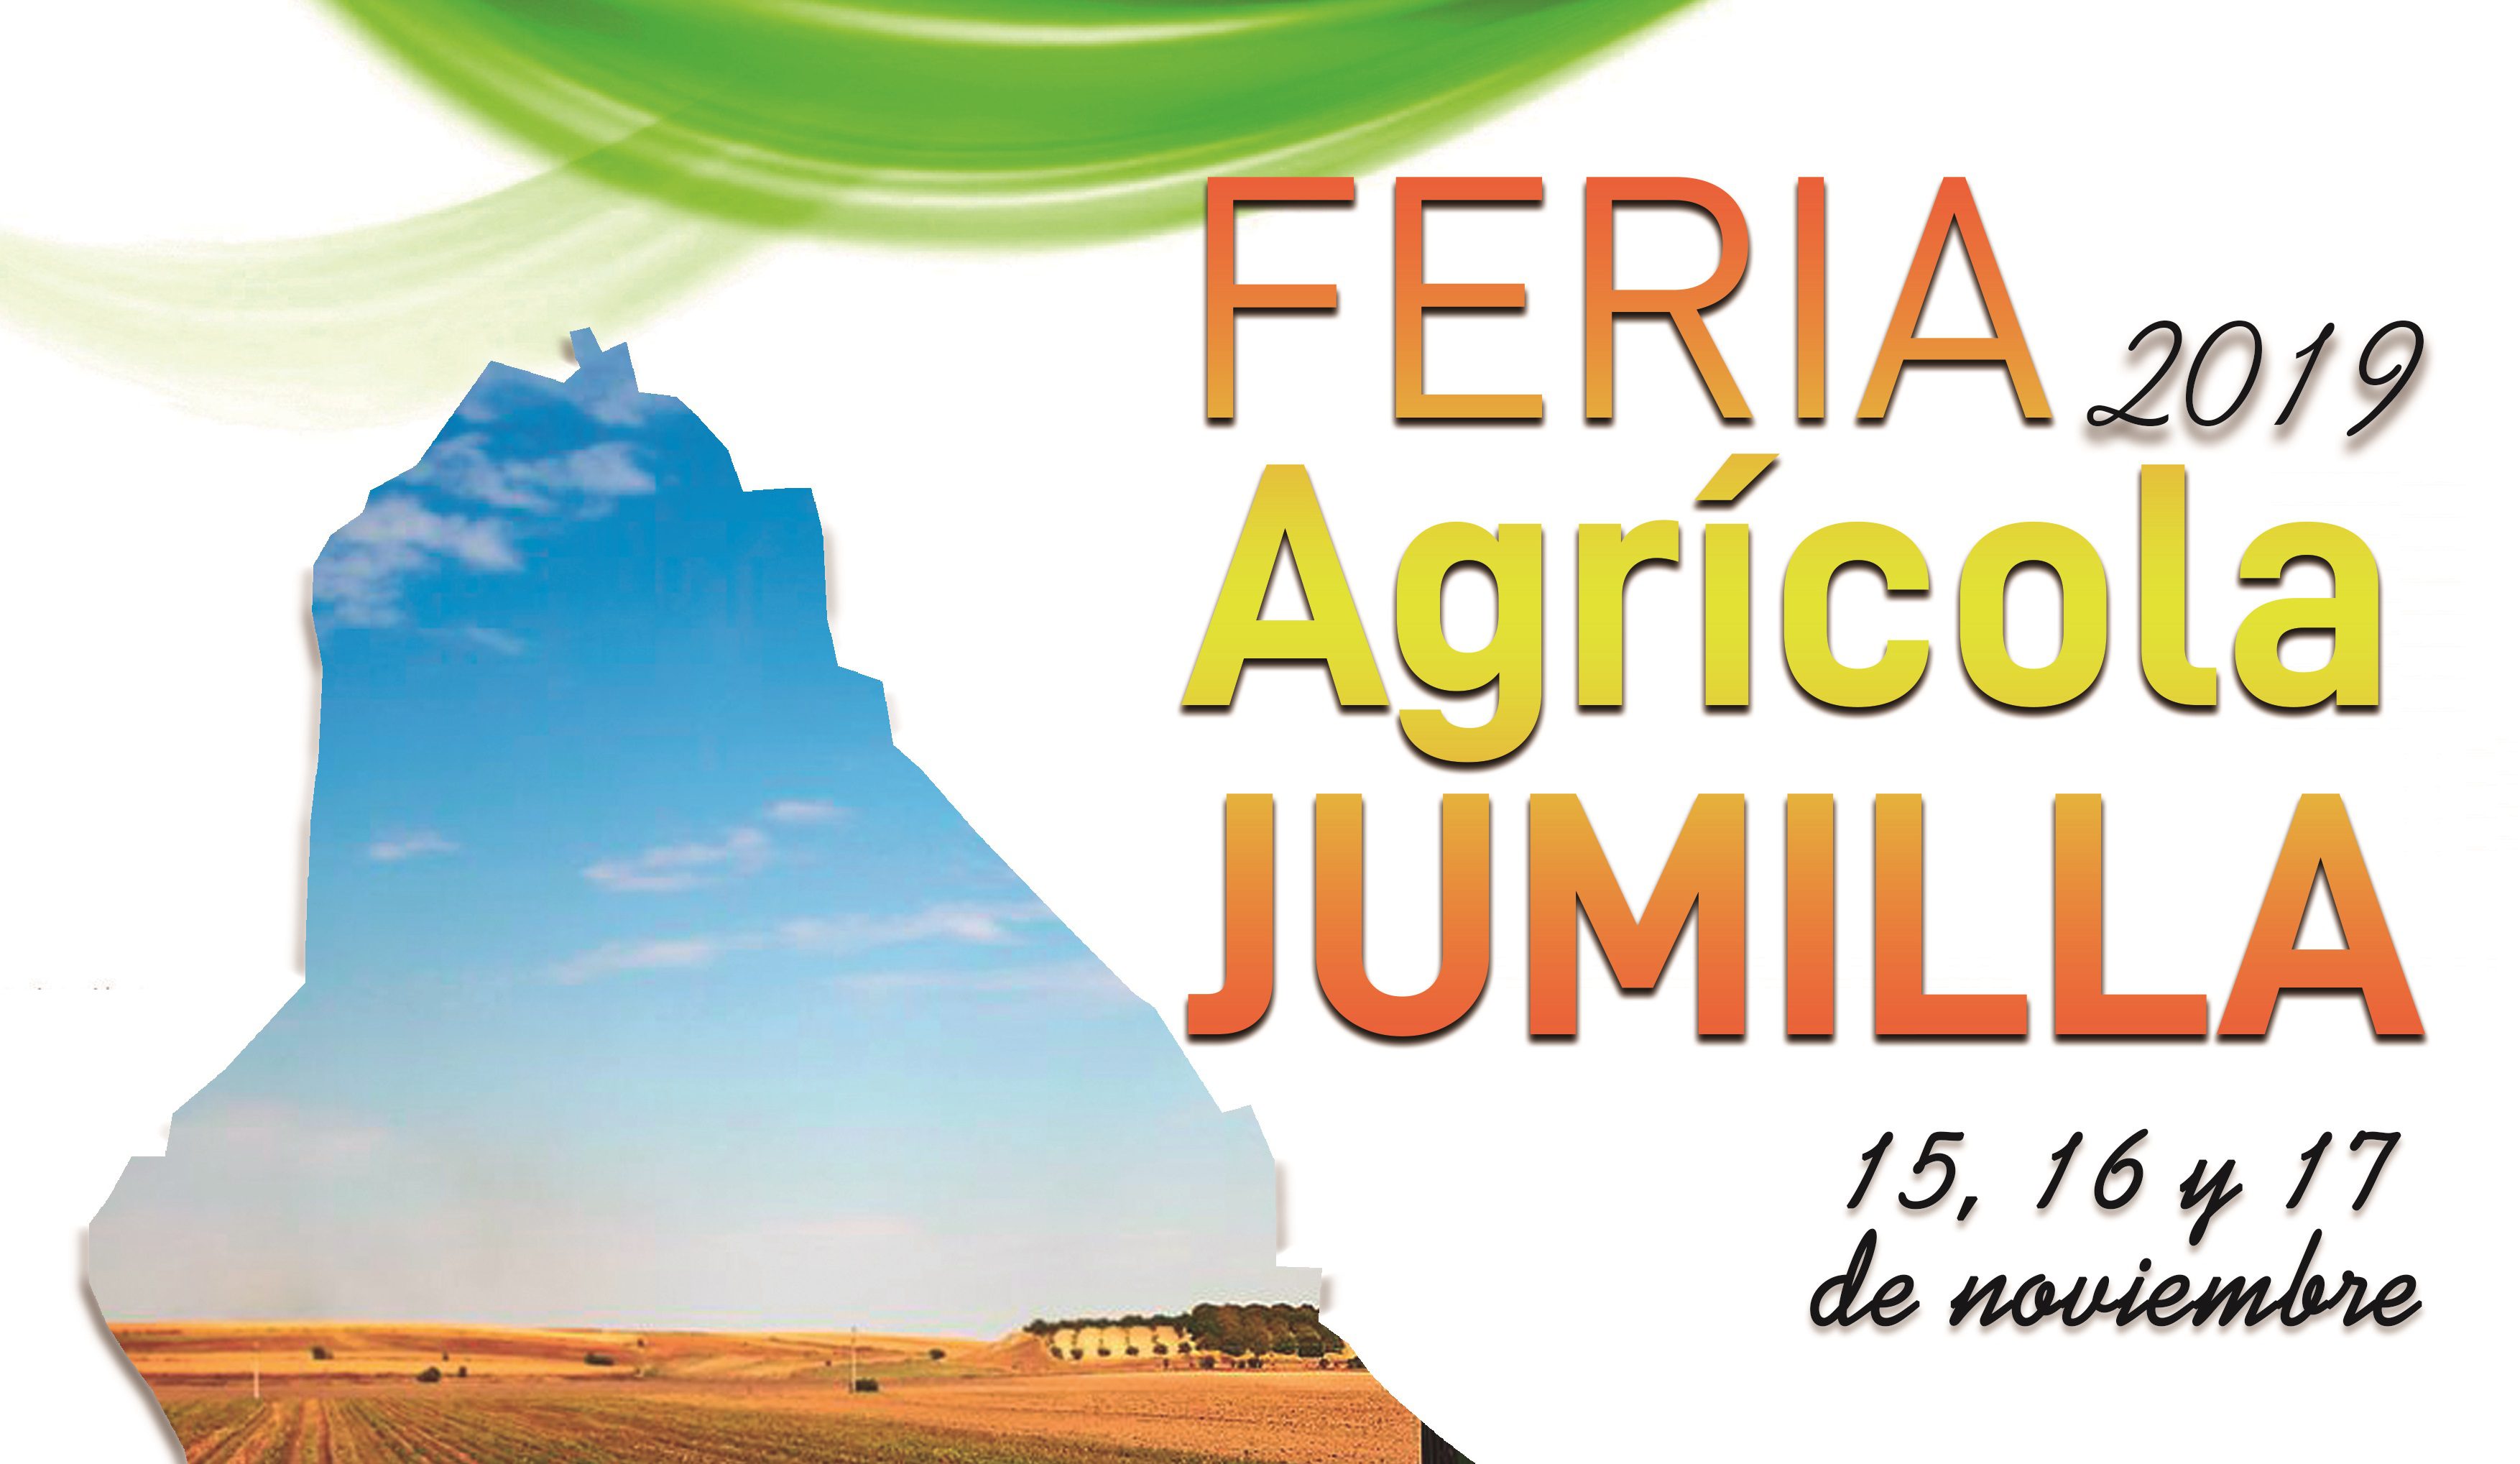 La Feria Agrícola se celebrará este año del 15 al 17 de noviembre